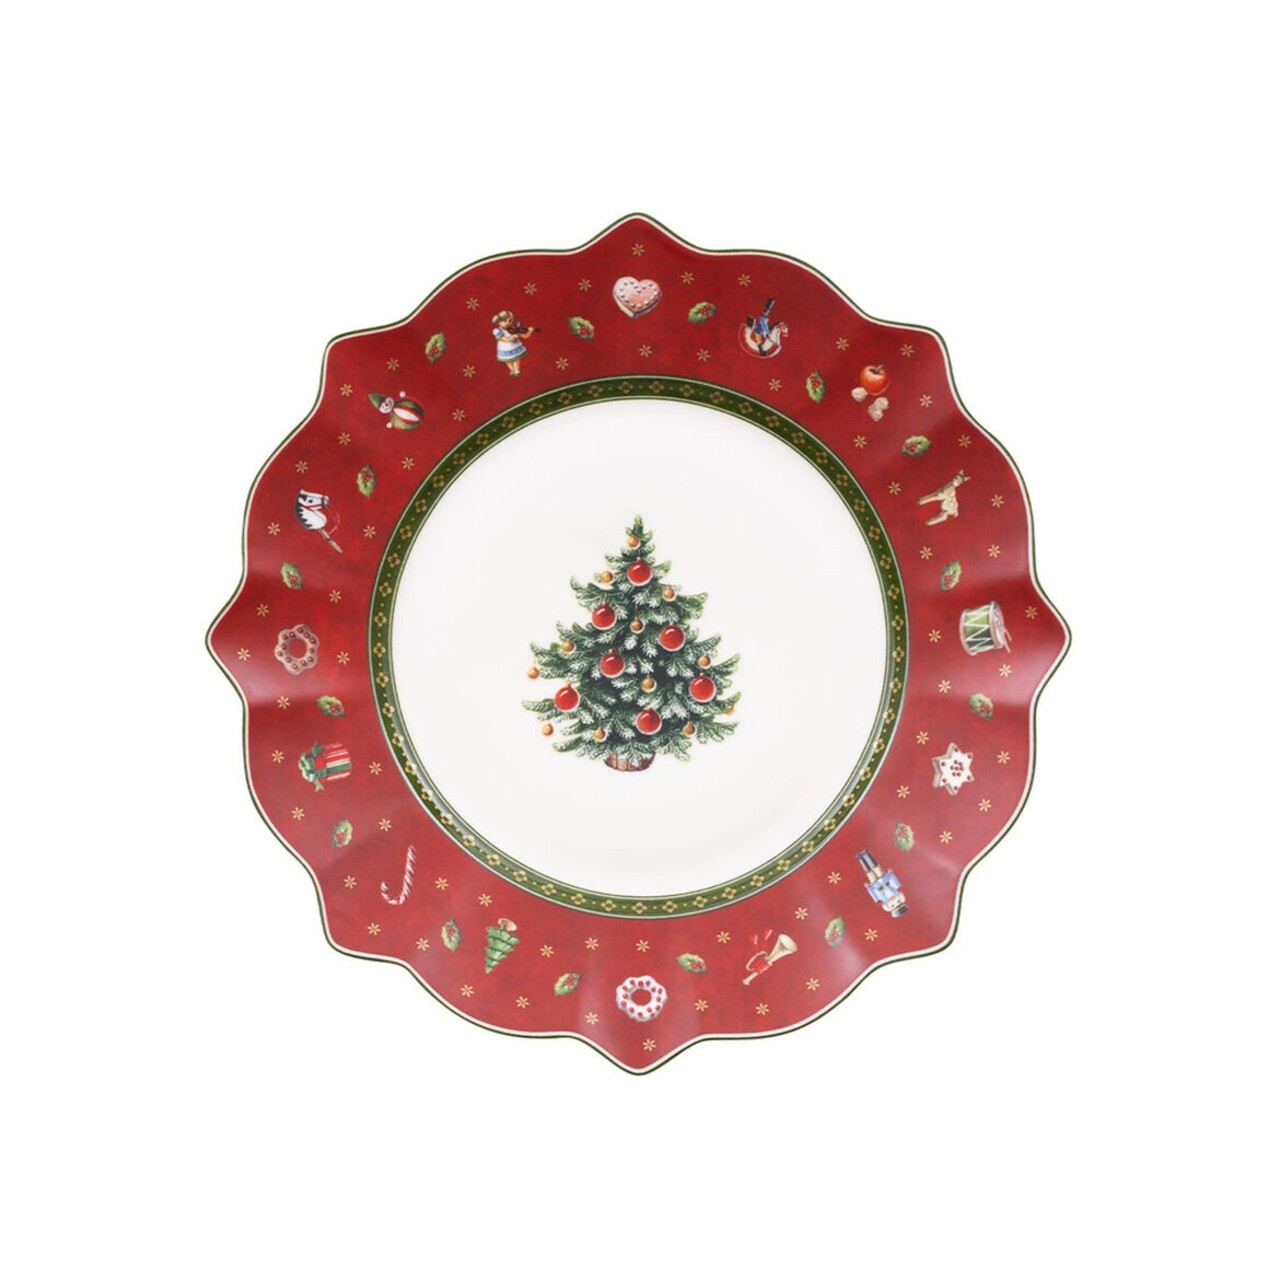 Desszerttányér, Villeroy & Boch, Toy's Delight Red, 24 cm, prémium porcelán